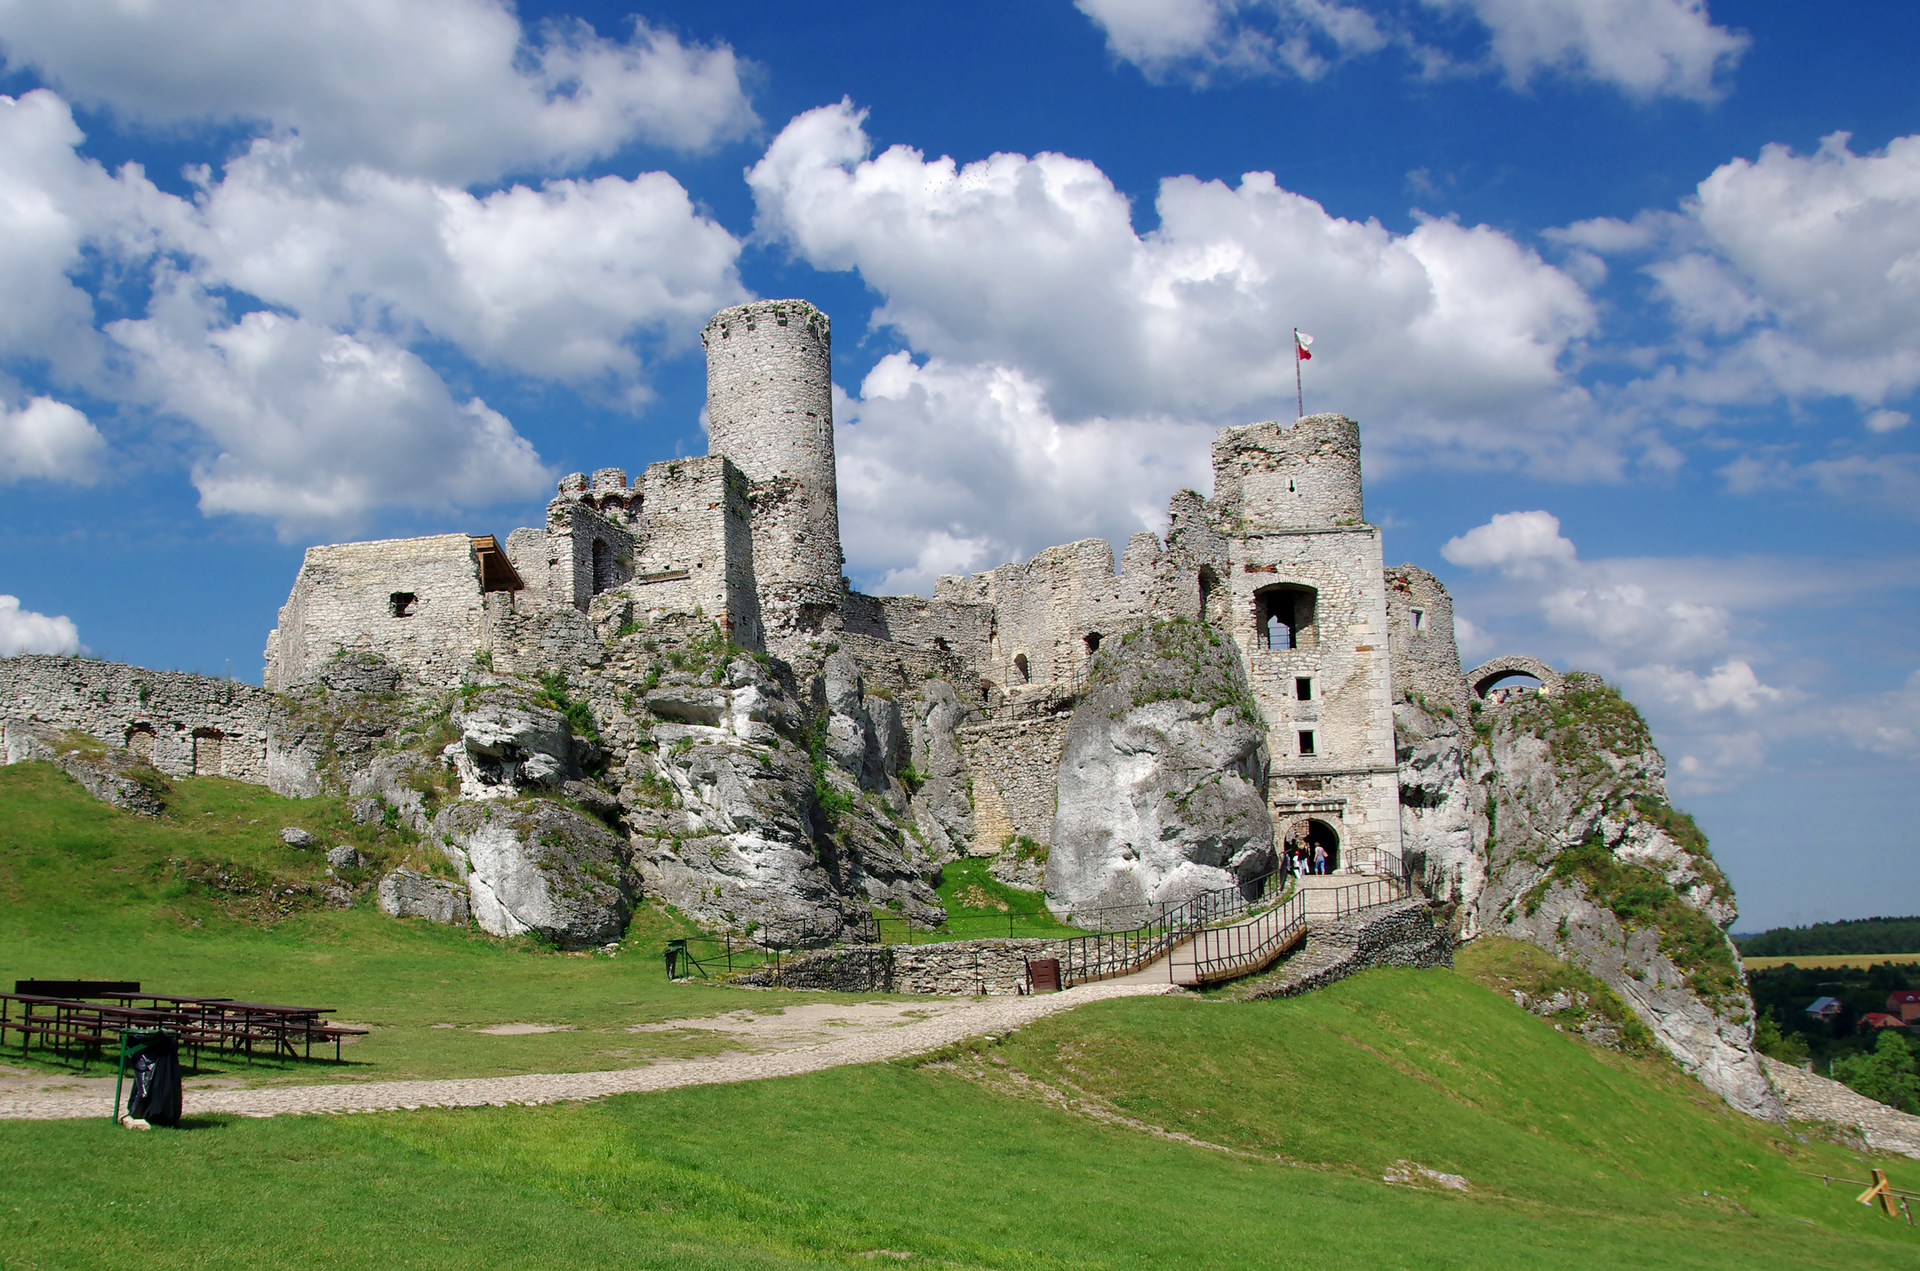 Fotografia prezentująca ruiny zamku umiejscowionego na wapiennym wzgórzu koło Ogrodzieńca.